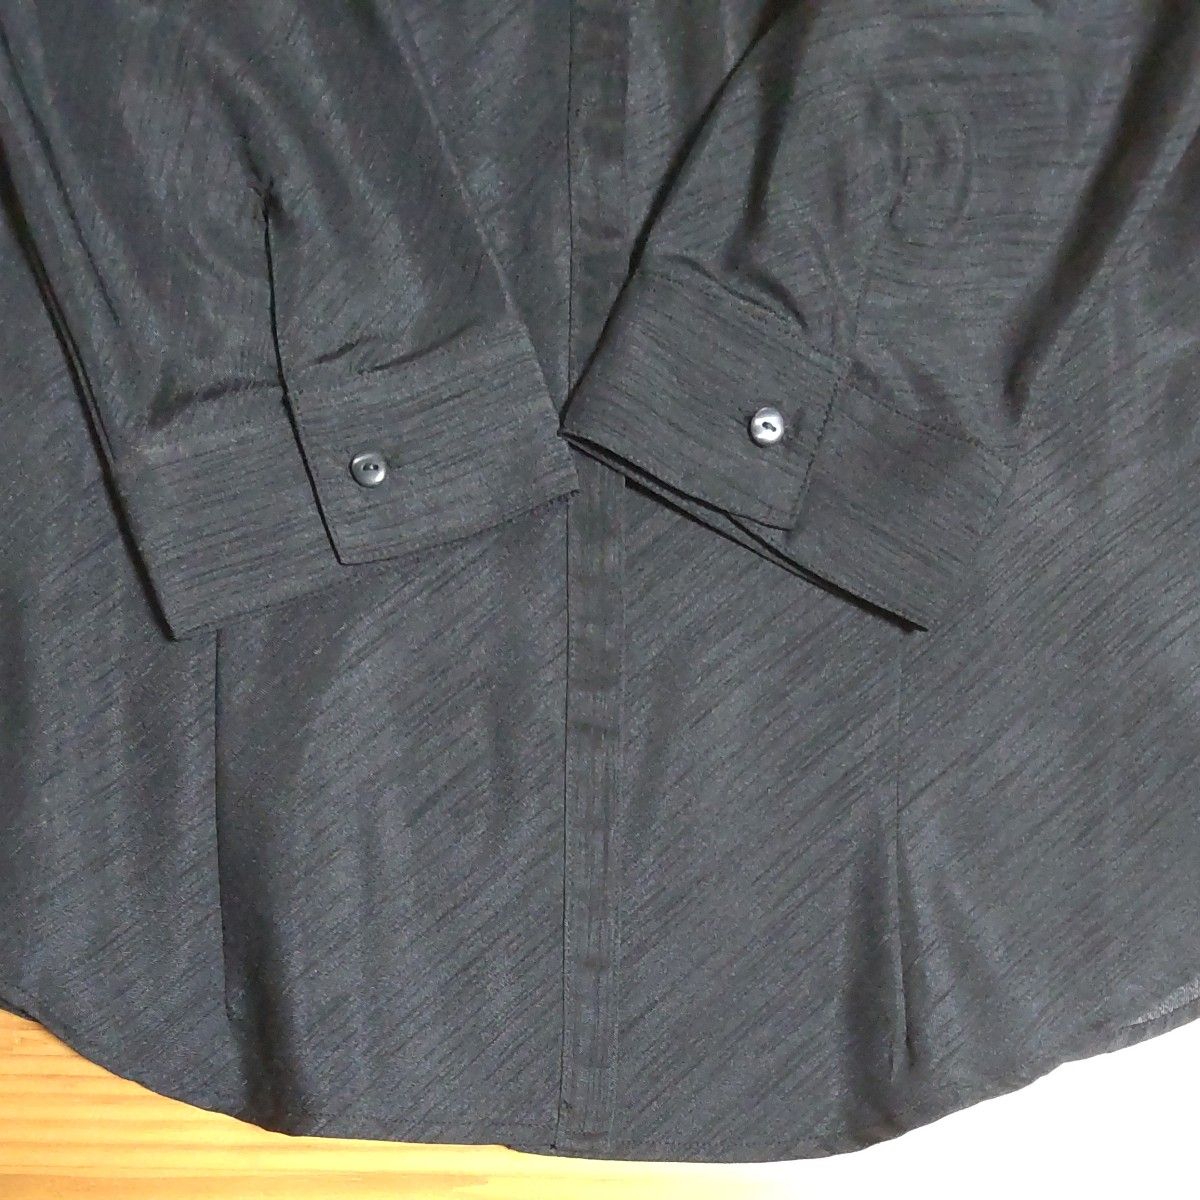 スキッパー衿 シャツ & タンクトップ セット  黒色  斜線状の織り柄    半端袖  L～LL  替えボタン2つ付き   美品